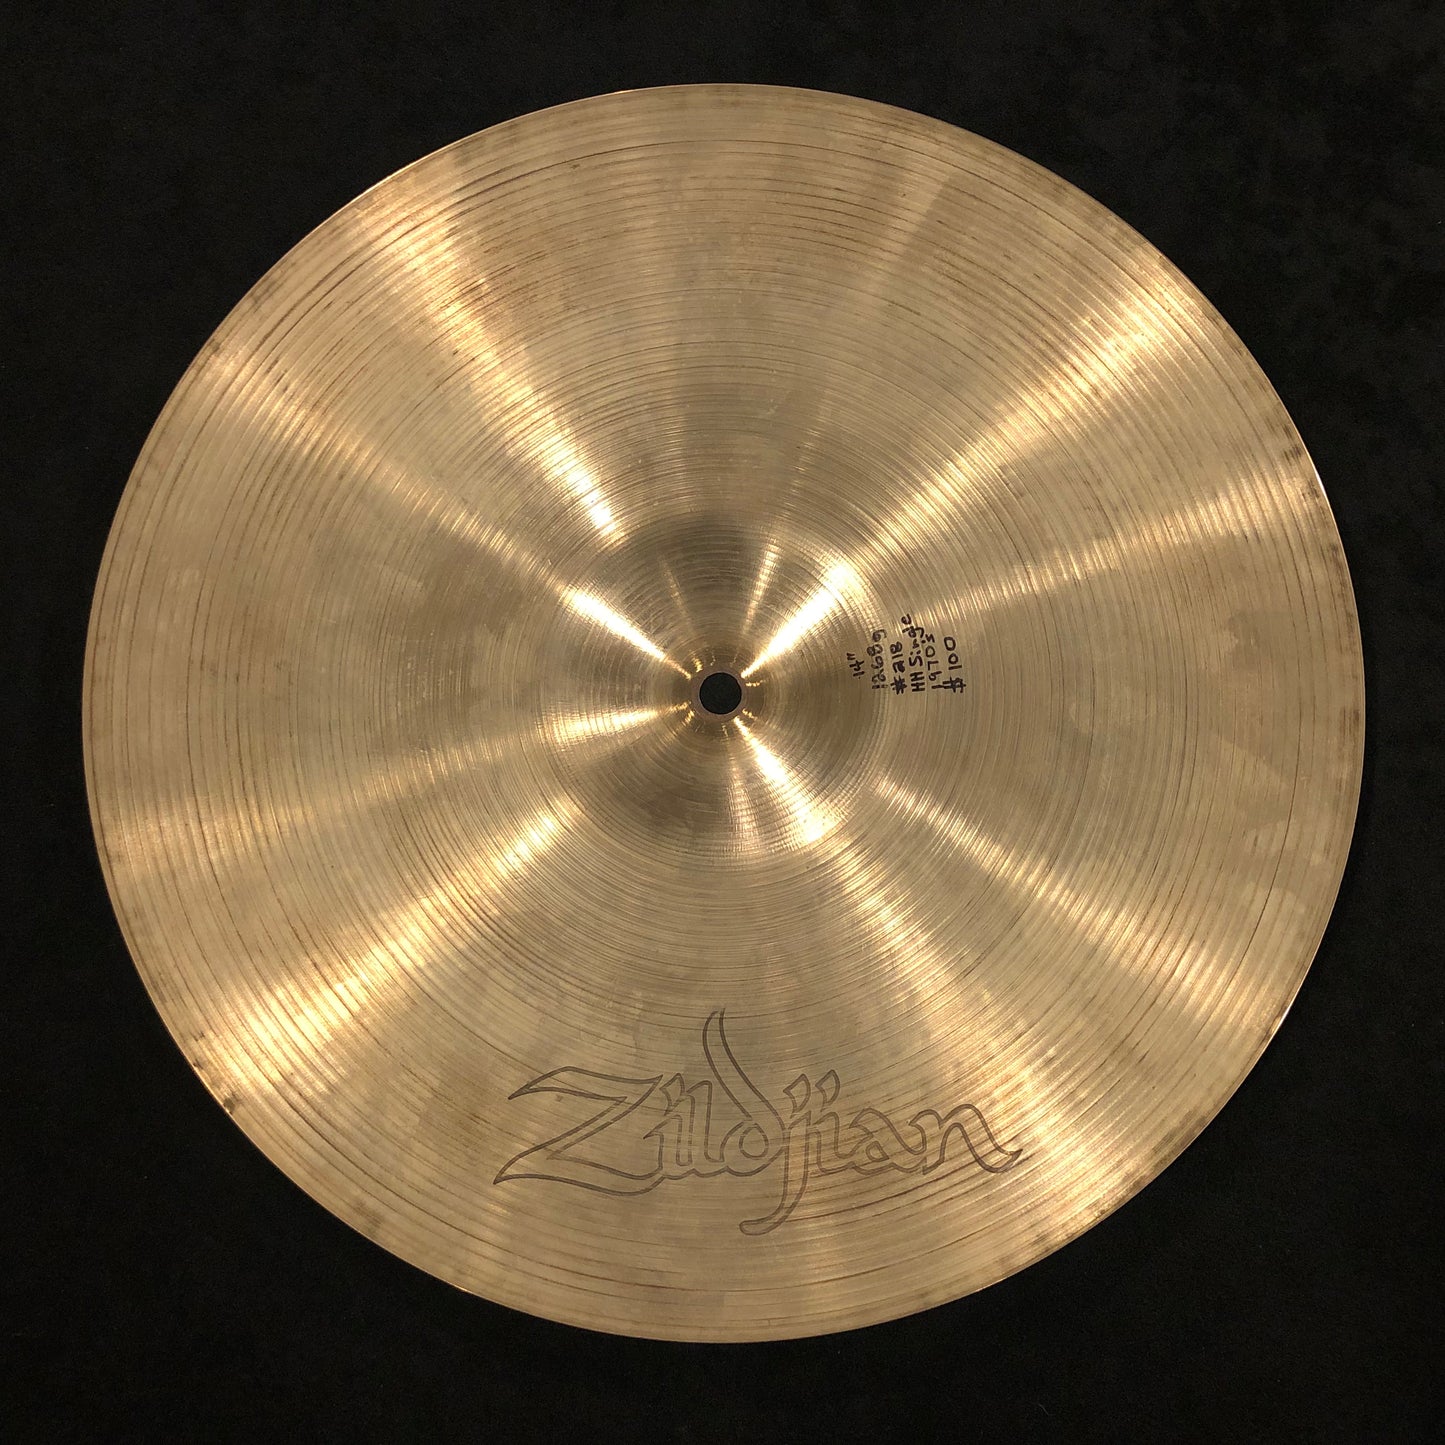 14" Zildjian A 1970s Rock Hi-Hat Top Cymbal 1268g #218